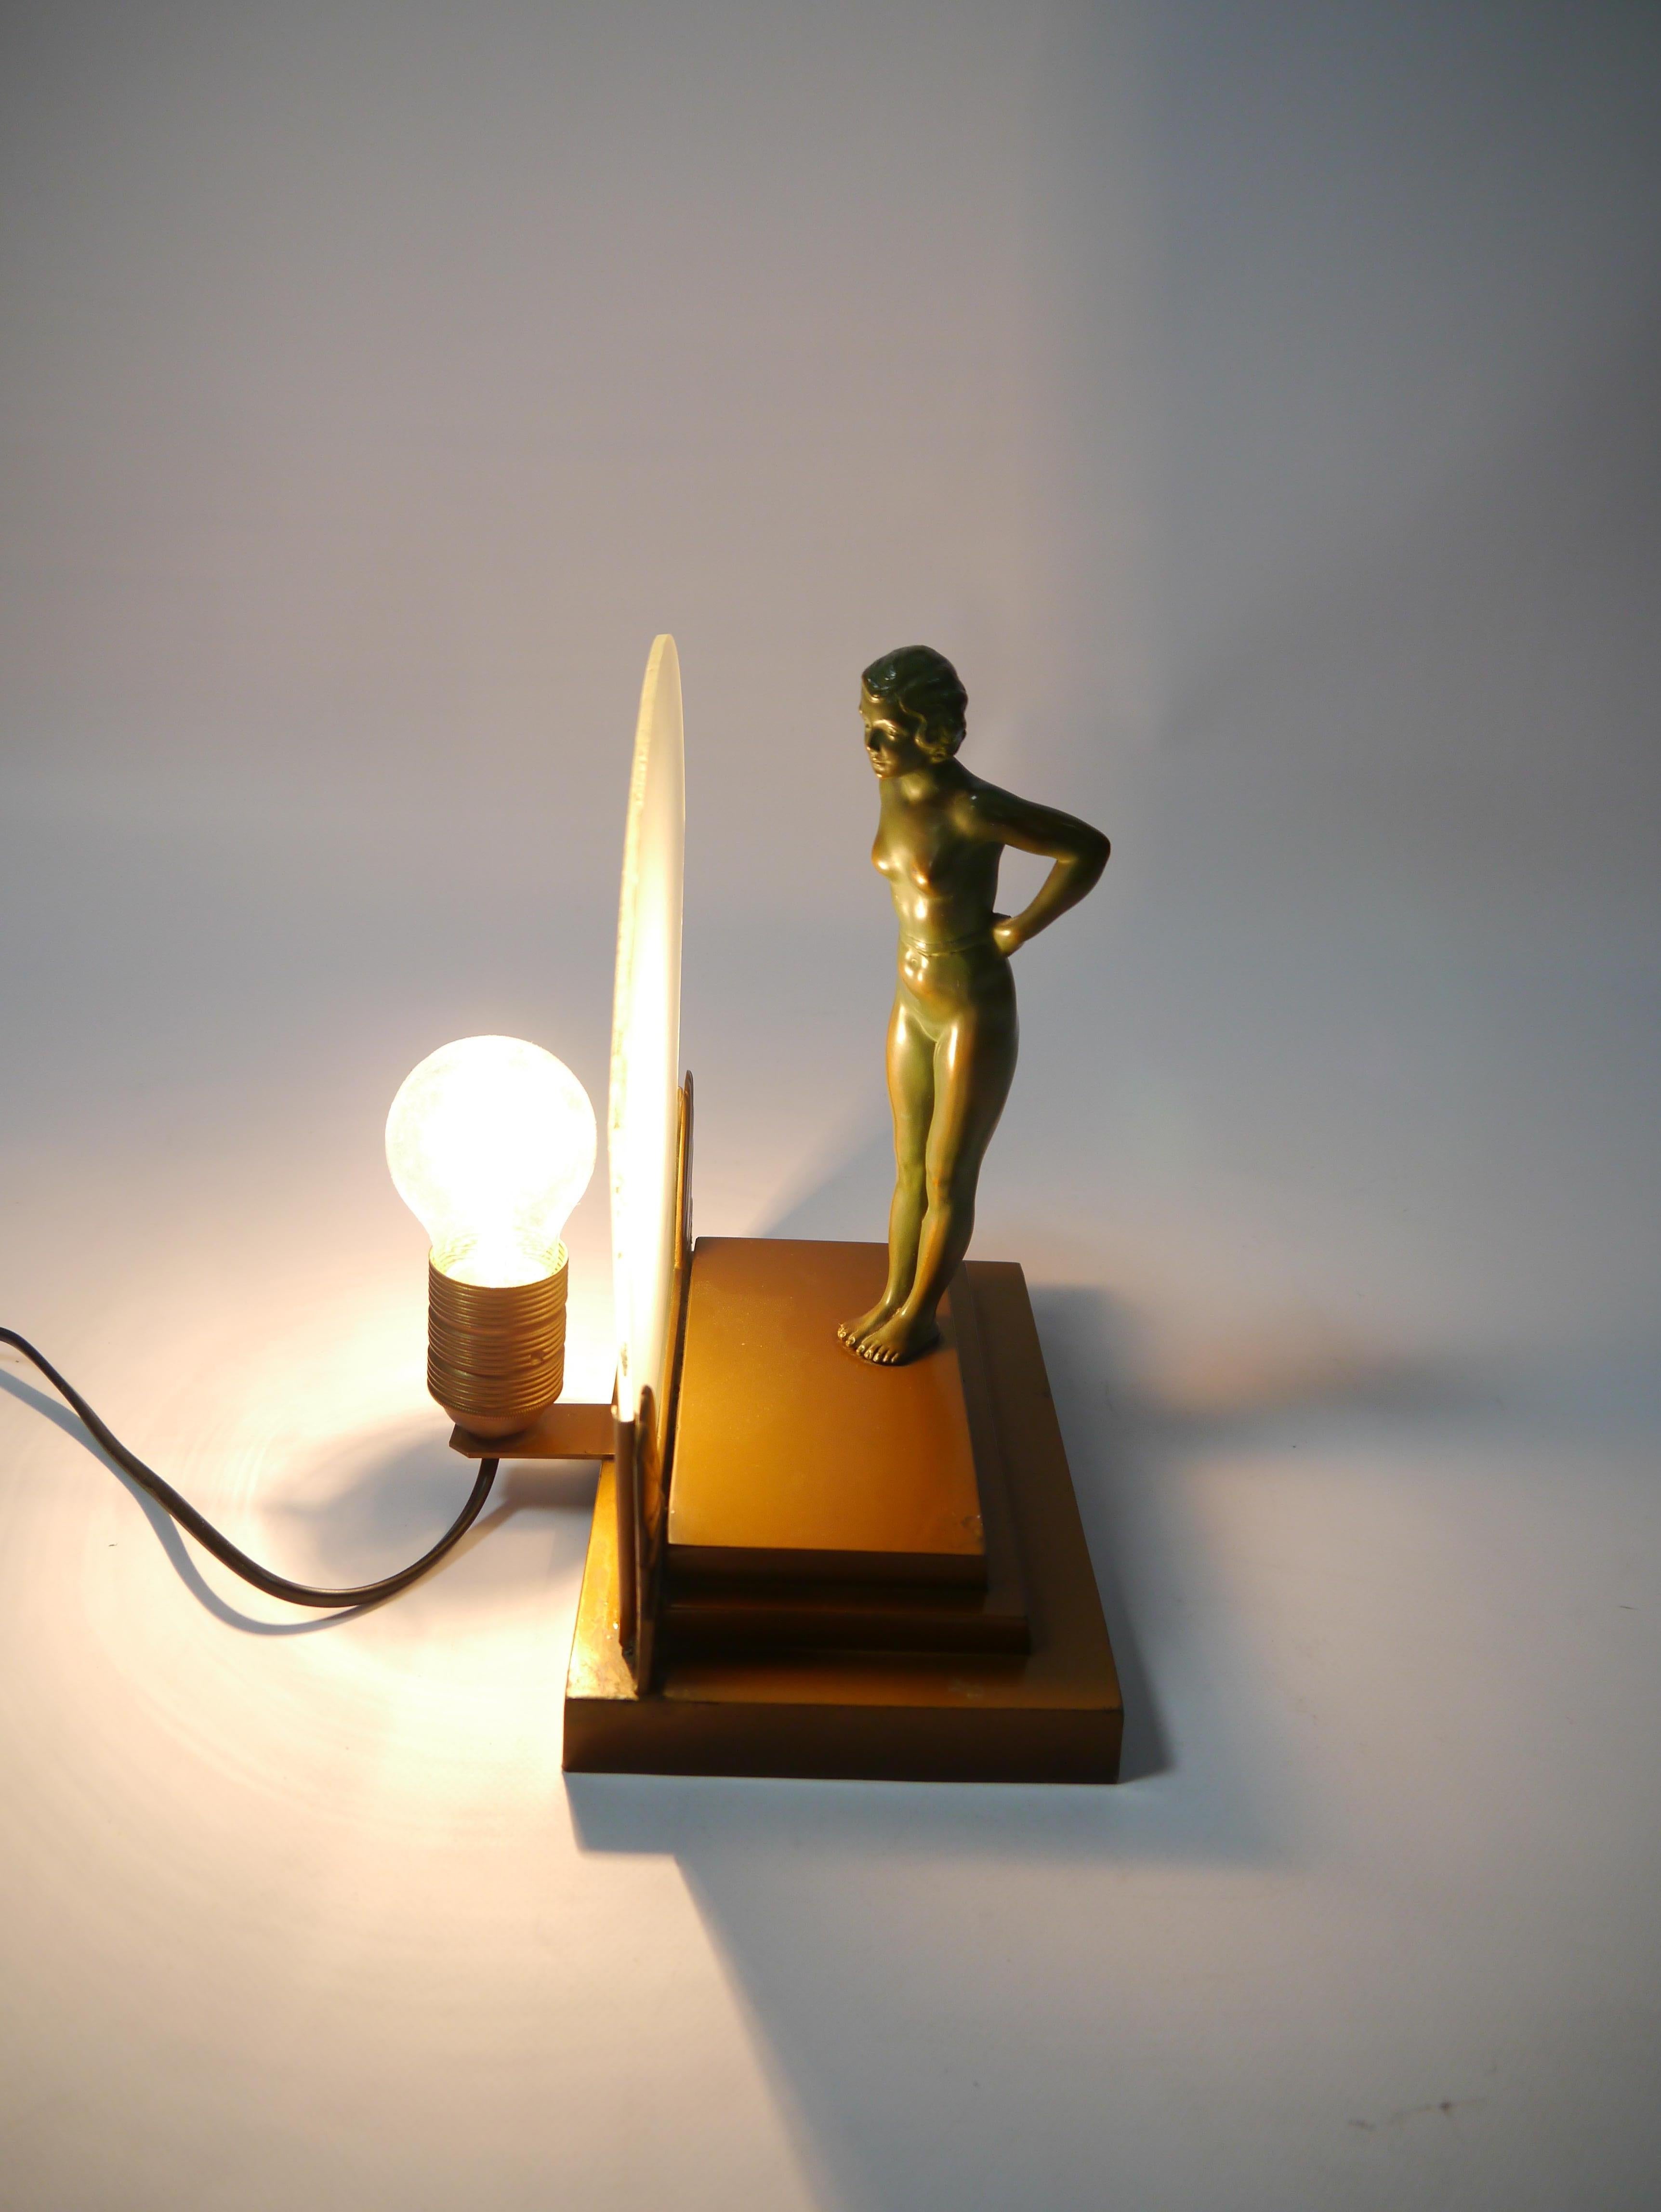 Art Deco Figurenlampe, die eine weibliche halbaktuelle Bronzefigur zeigt, die auf einem Podest steht und sich gegen einen Milchglasschirm lehnt. Die Figur kann auch um 180 Grad gedreht werden. Die Figur zeigt feine Details und eine schöne